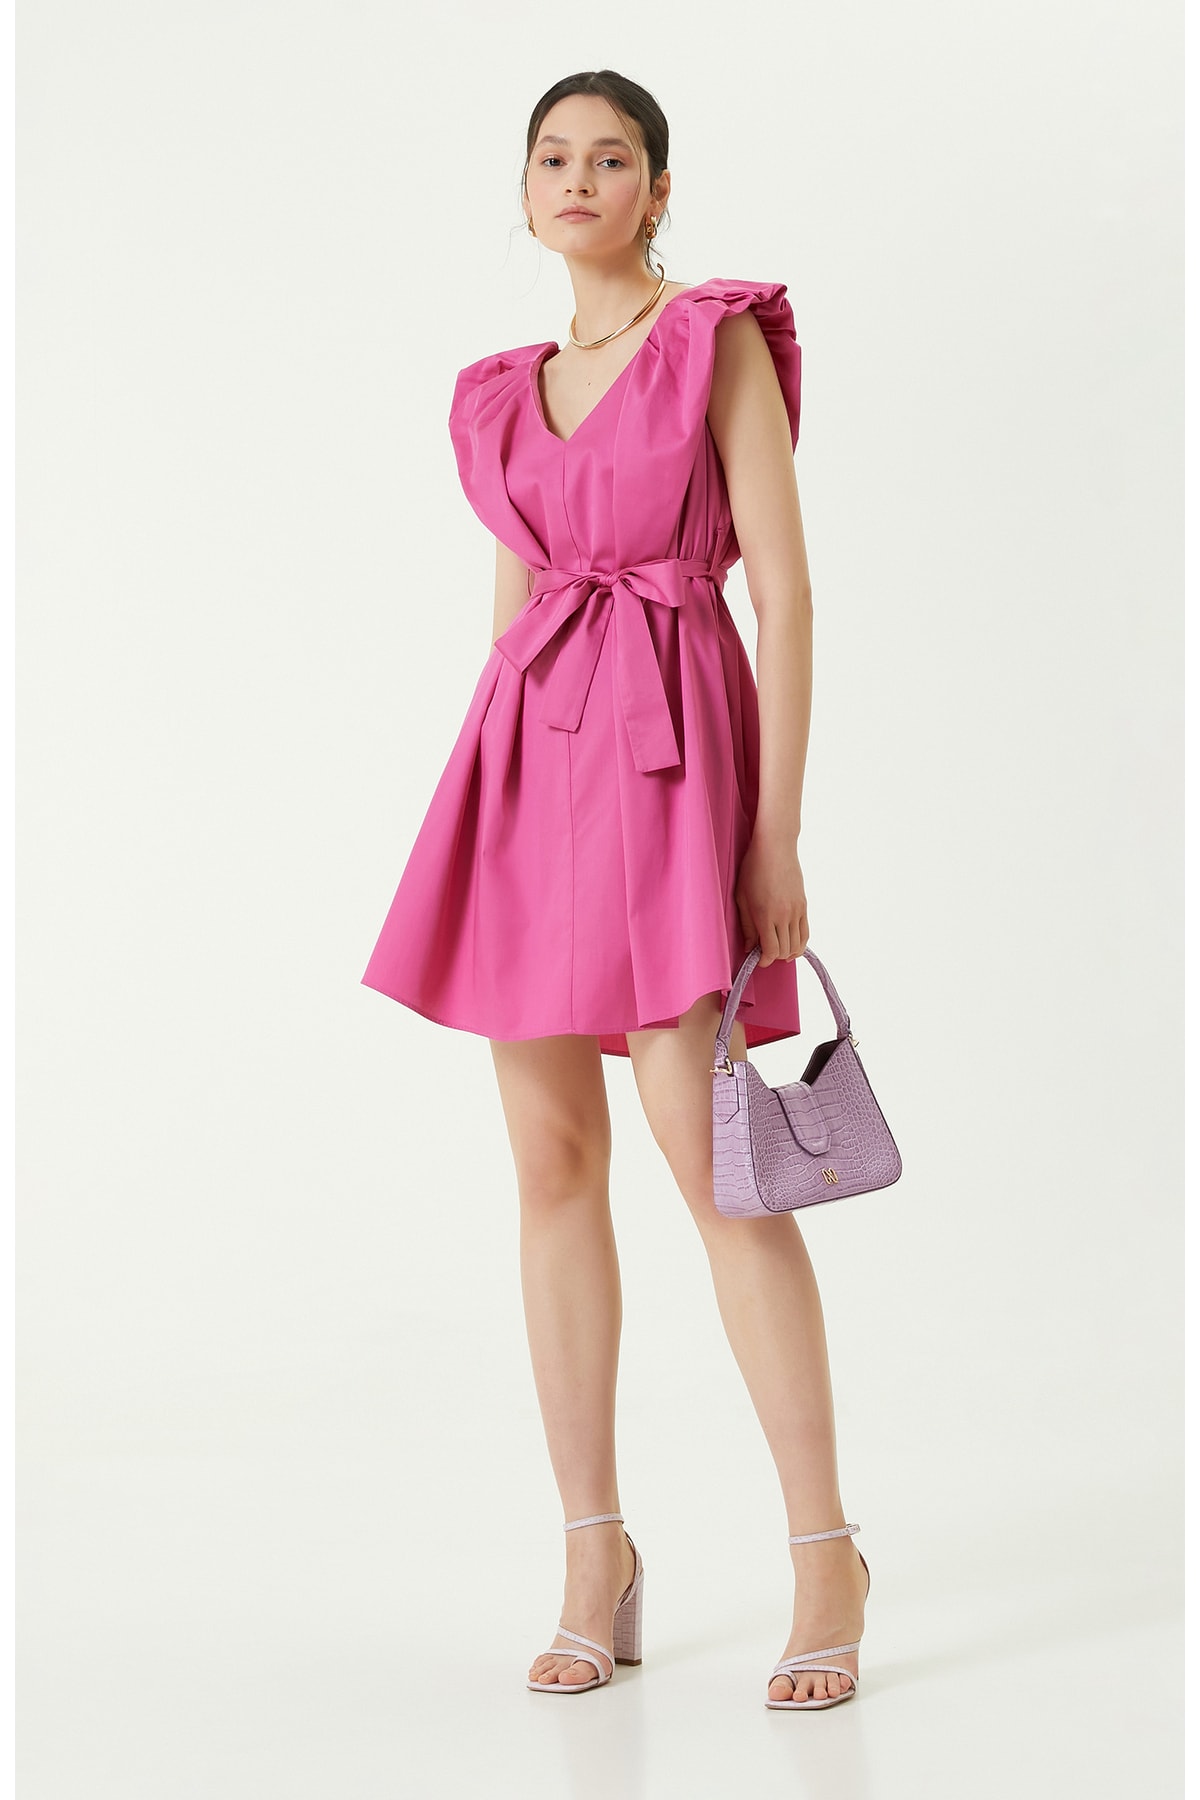 Платье без рукавов с V-образным вырезом цвета фуксии Network, розовый мини платье цвета фуксии network